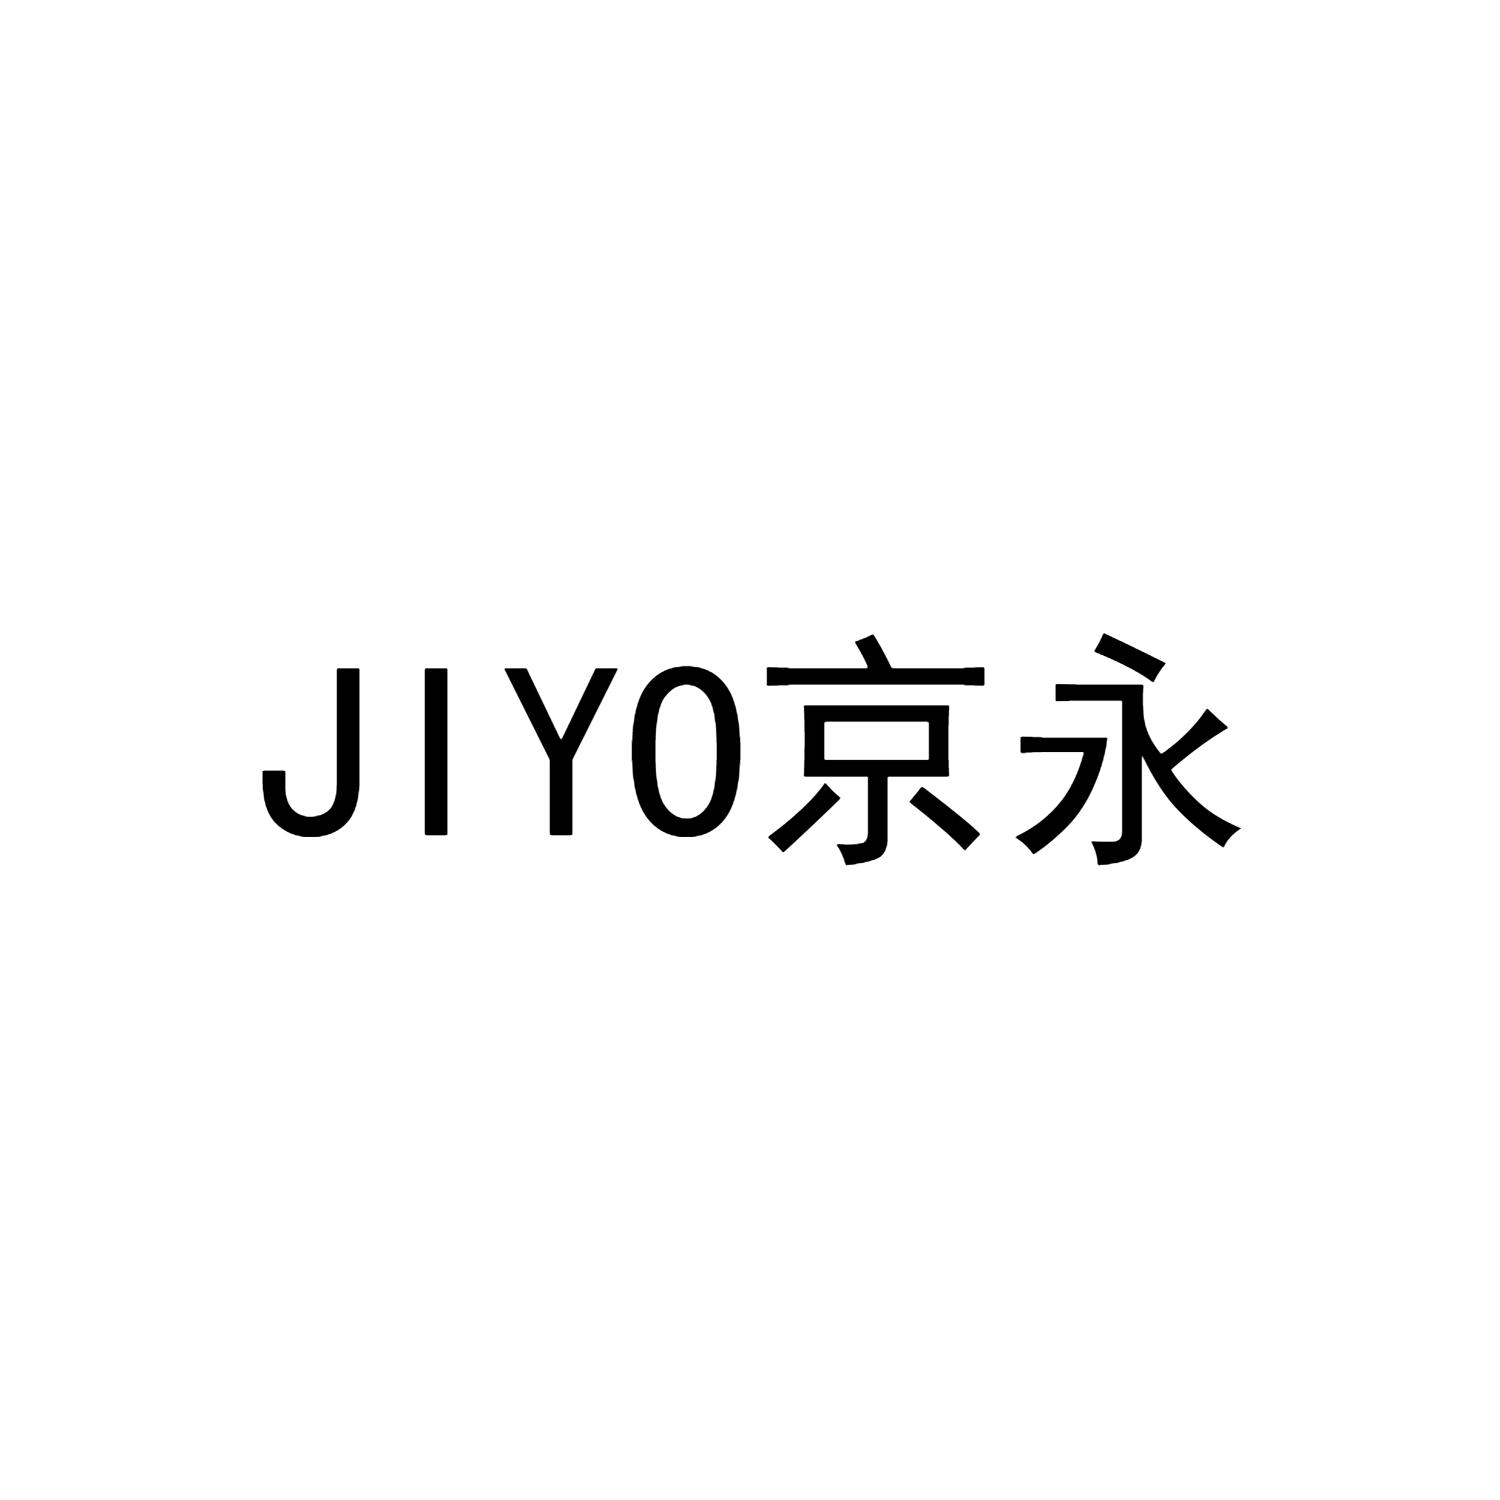 转让商标-JIYO 京永